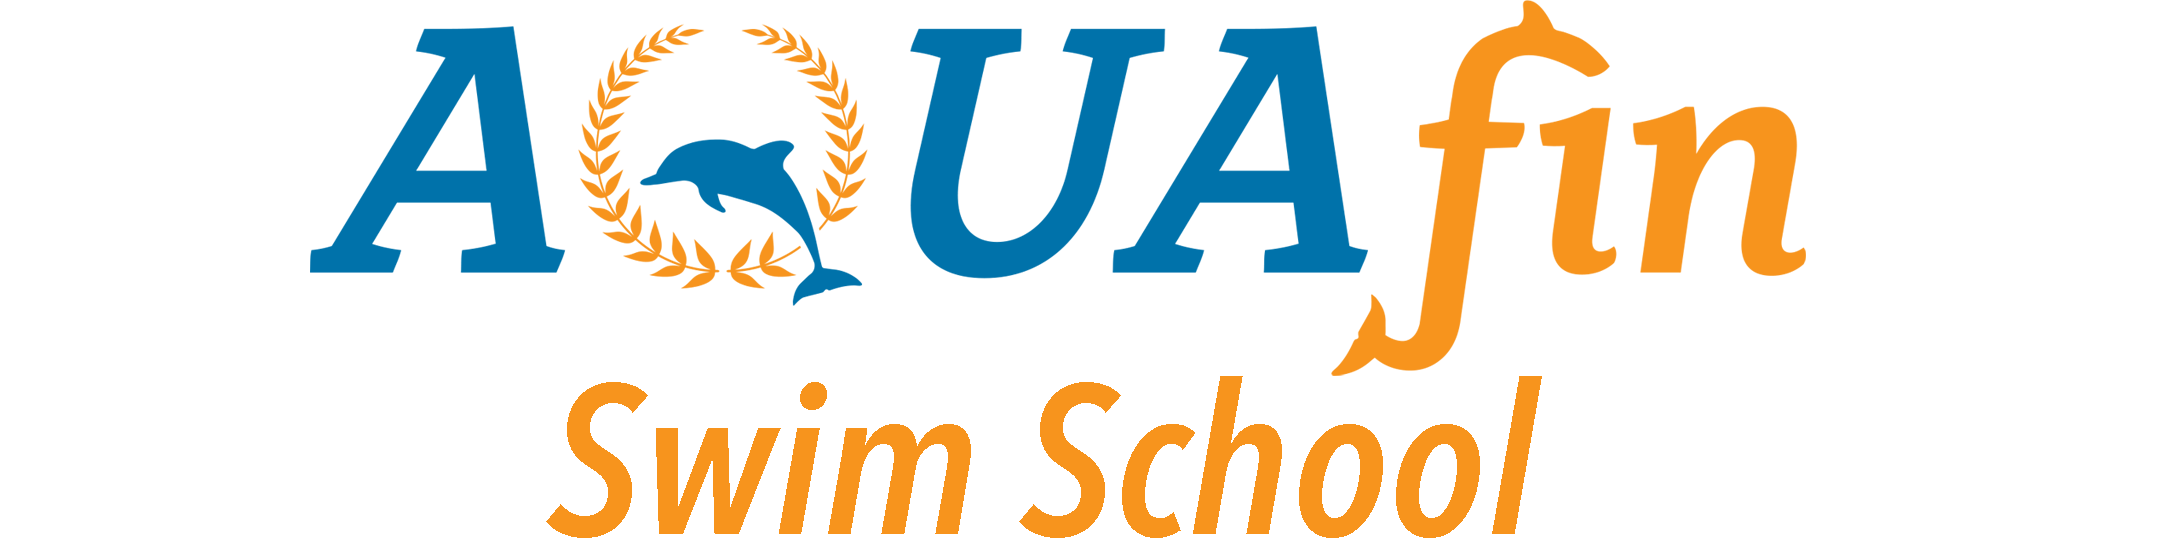 New AQUA Logo.png